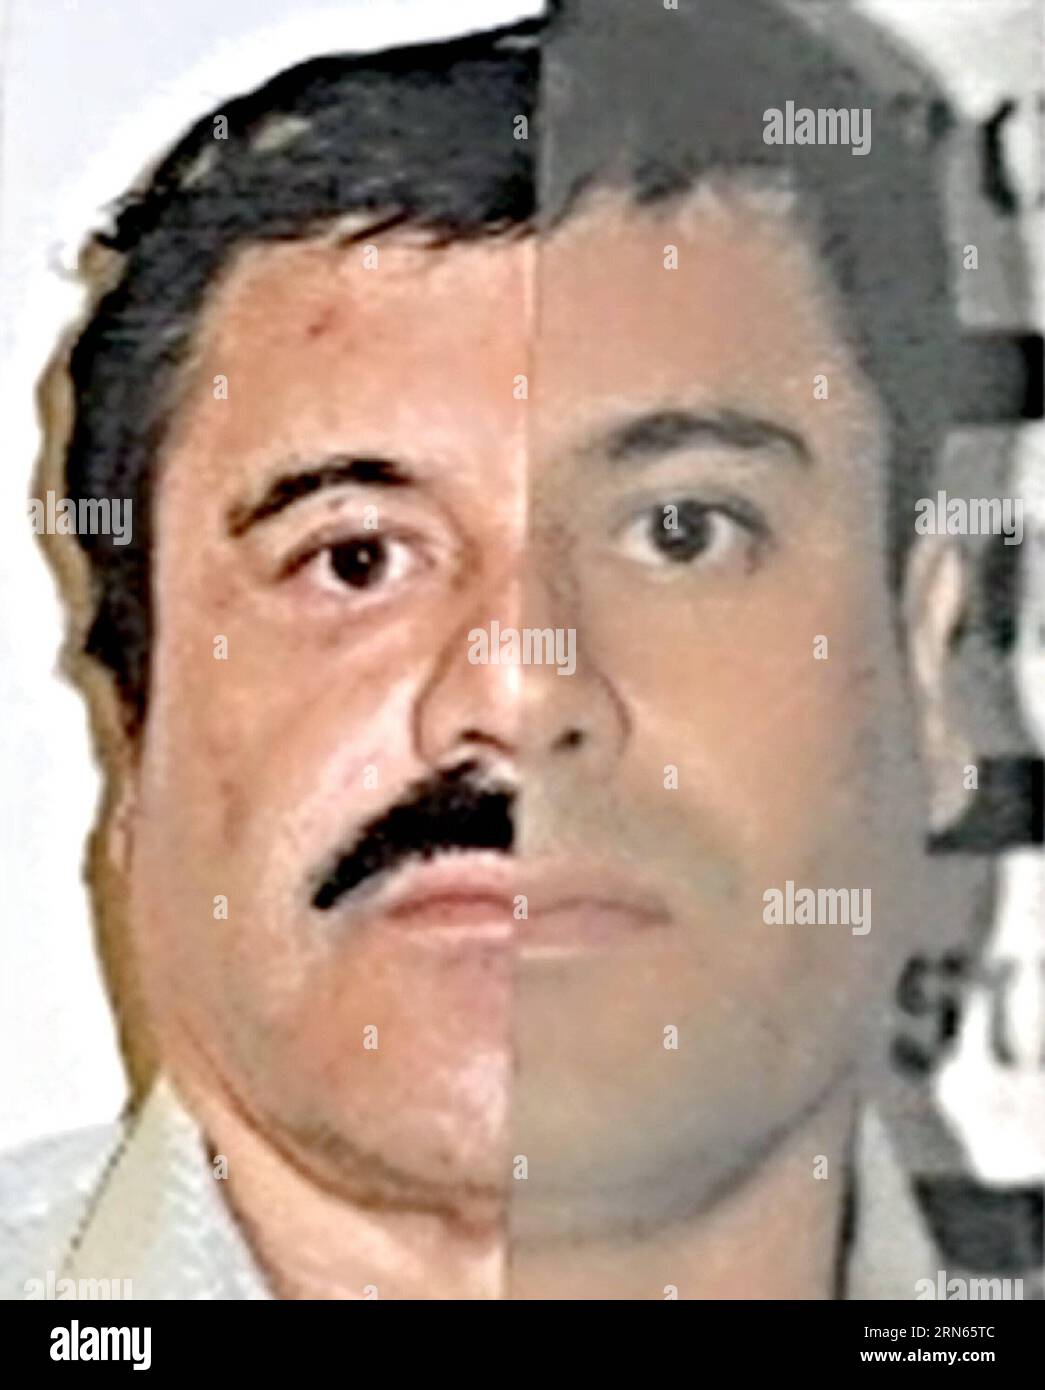 MEXICO, image fournie par le procureur général de la République du Mexique le 25 février 2014 montre le roi du cartel de la drogue mexicain Joaquin El Chapo Guzma identifié à Mexico, au Mexique. Guzman, chef du cartel de la drogue de Sinaloa, a disparu samedi soir de la prison de haute sécurité Altiplano à l'extérieur de Mexico, selon la Commission de sécurité nationale. (Zjy) MEXICO-DRUG CARTEL-GUZMAN-ESCAPE-FILE PedroxMera PUBLICATIONxNOTxINxCHN Mexico City image fournie par le procureur général de la République du Mexique LE 25 2014 février montre Joaquin El Chapo, le roi du cartel MEXICAIN de la drogue Banque D'Images